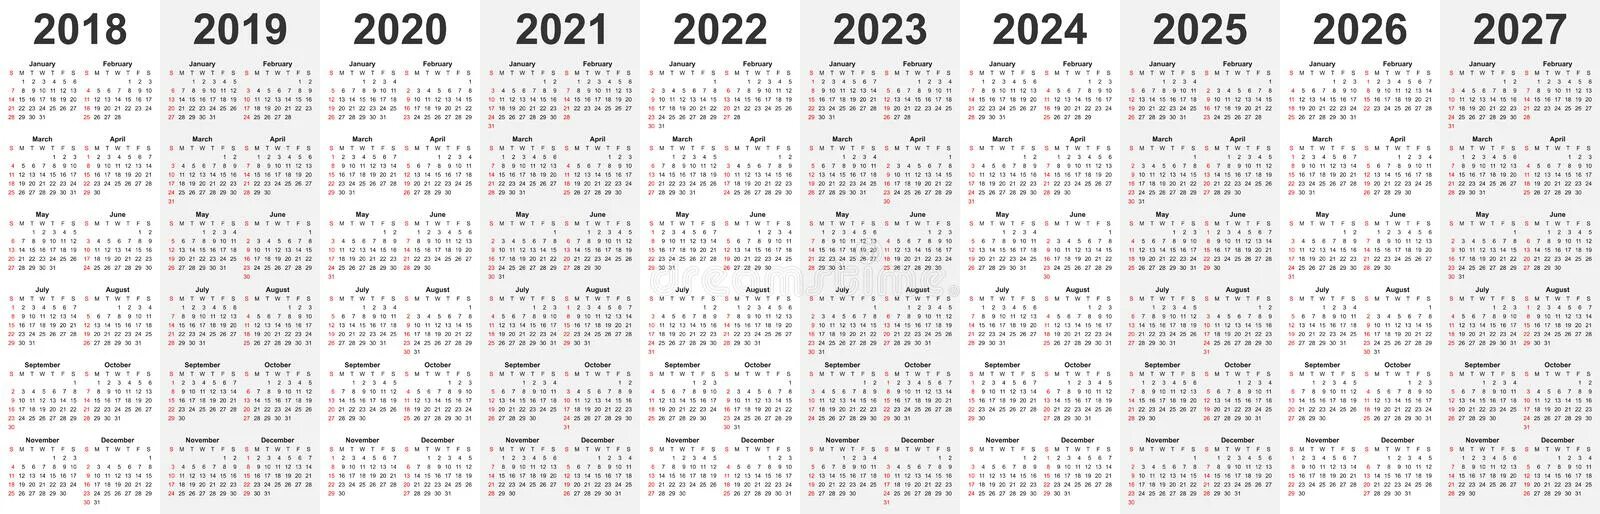 Количество дней в 1 квартале 2024 года. Календарь 2019 2020 2021 2022. 2019 2020 2021 2022 2023. (−2021) ( − 2021 ) + + (−2020) ( − 2020 ) + + (−2019) ( − 2019 ) + + ... + + 2022 2022 + + 2023 2023 .. 2020 2021 2022 2023 2024 2025.